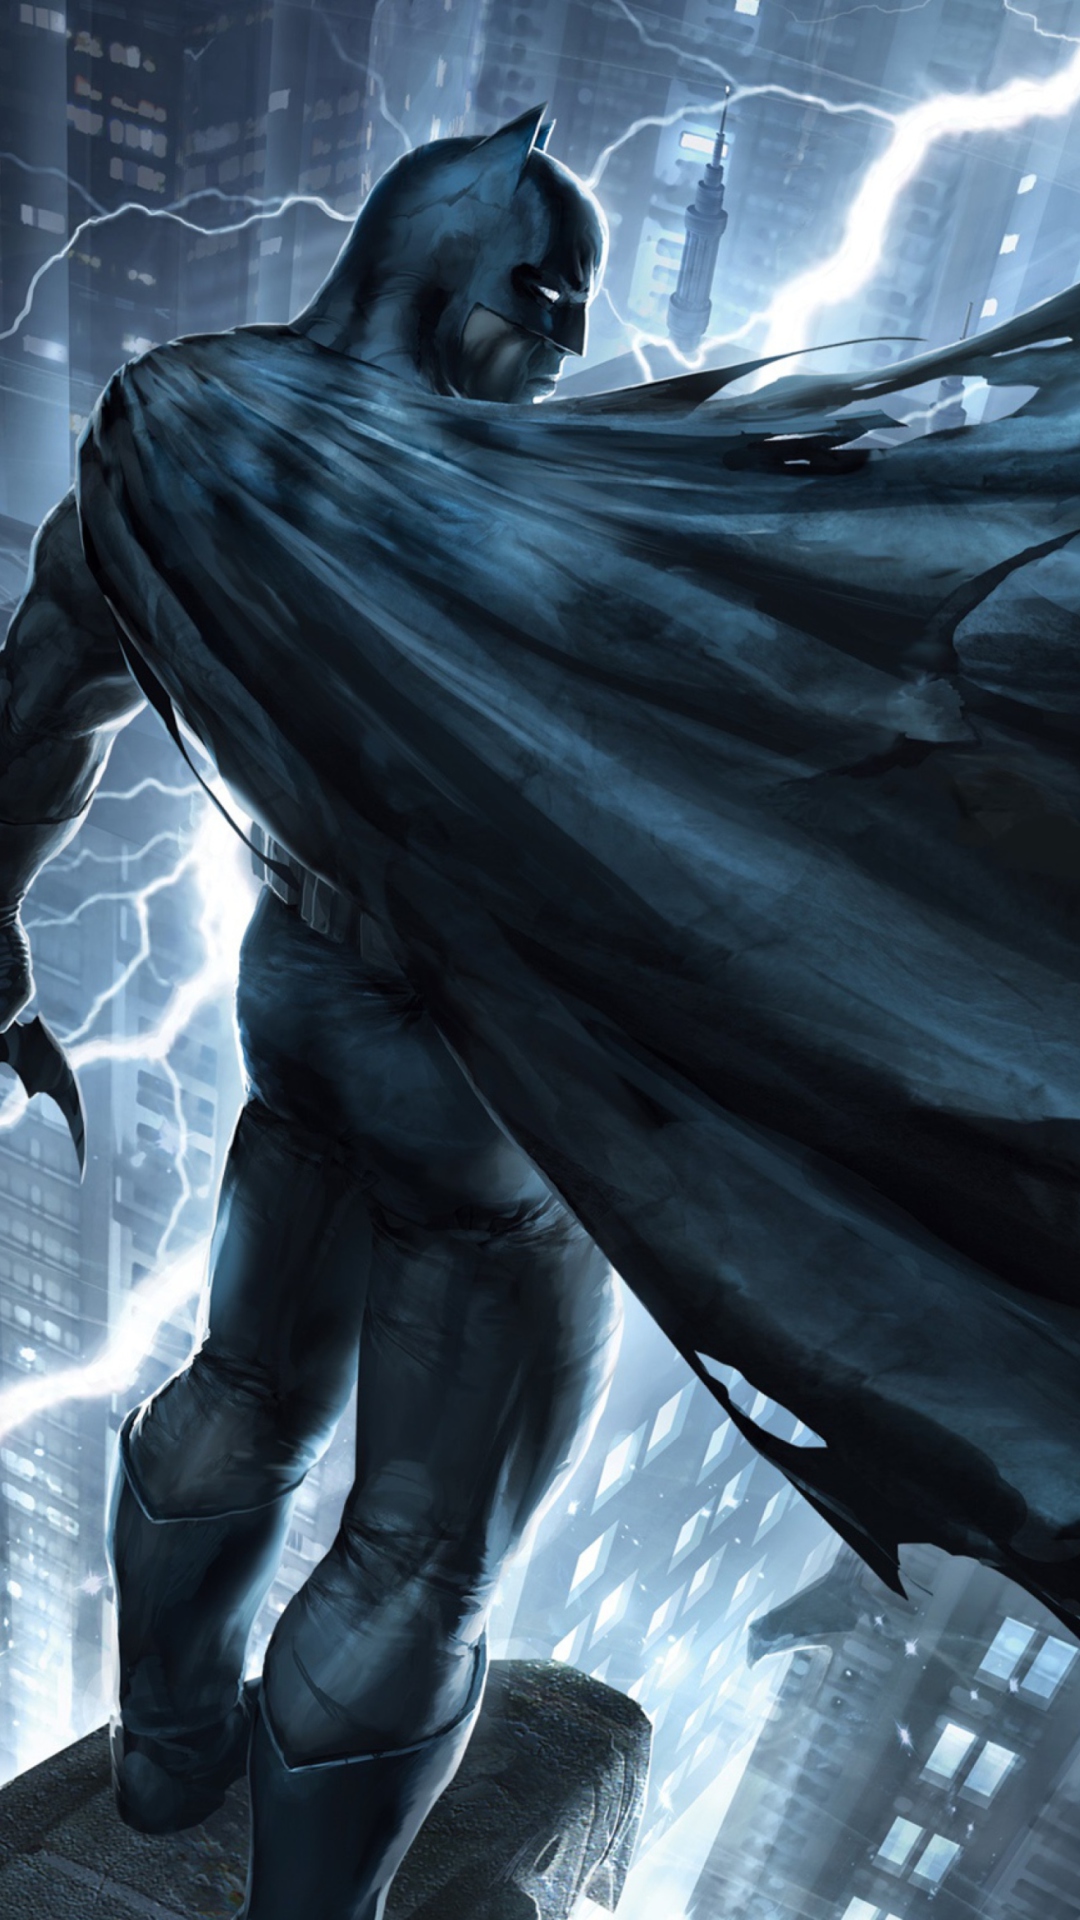 Download Gambar Wallpaper Hd Android Batman Joker terbaru 2020